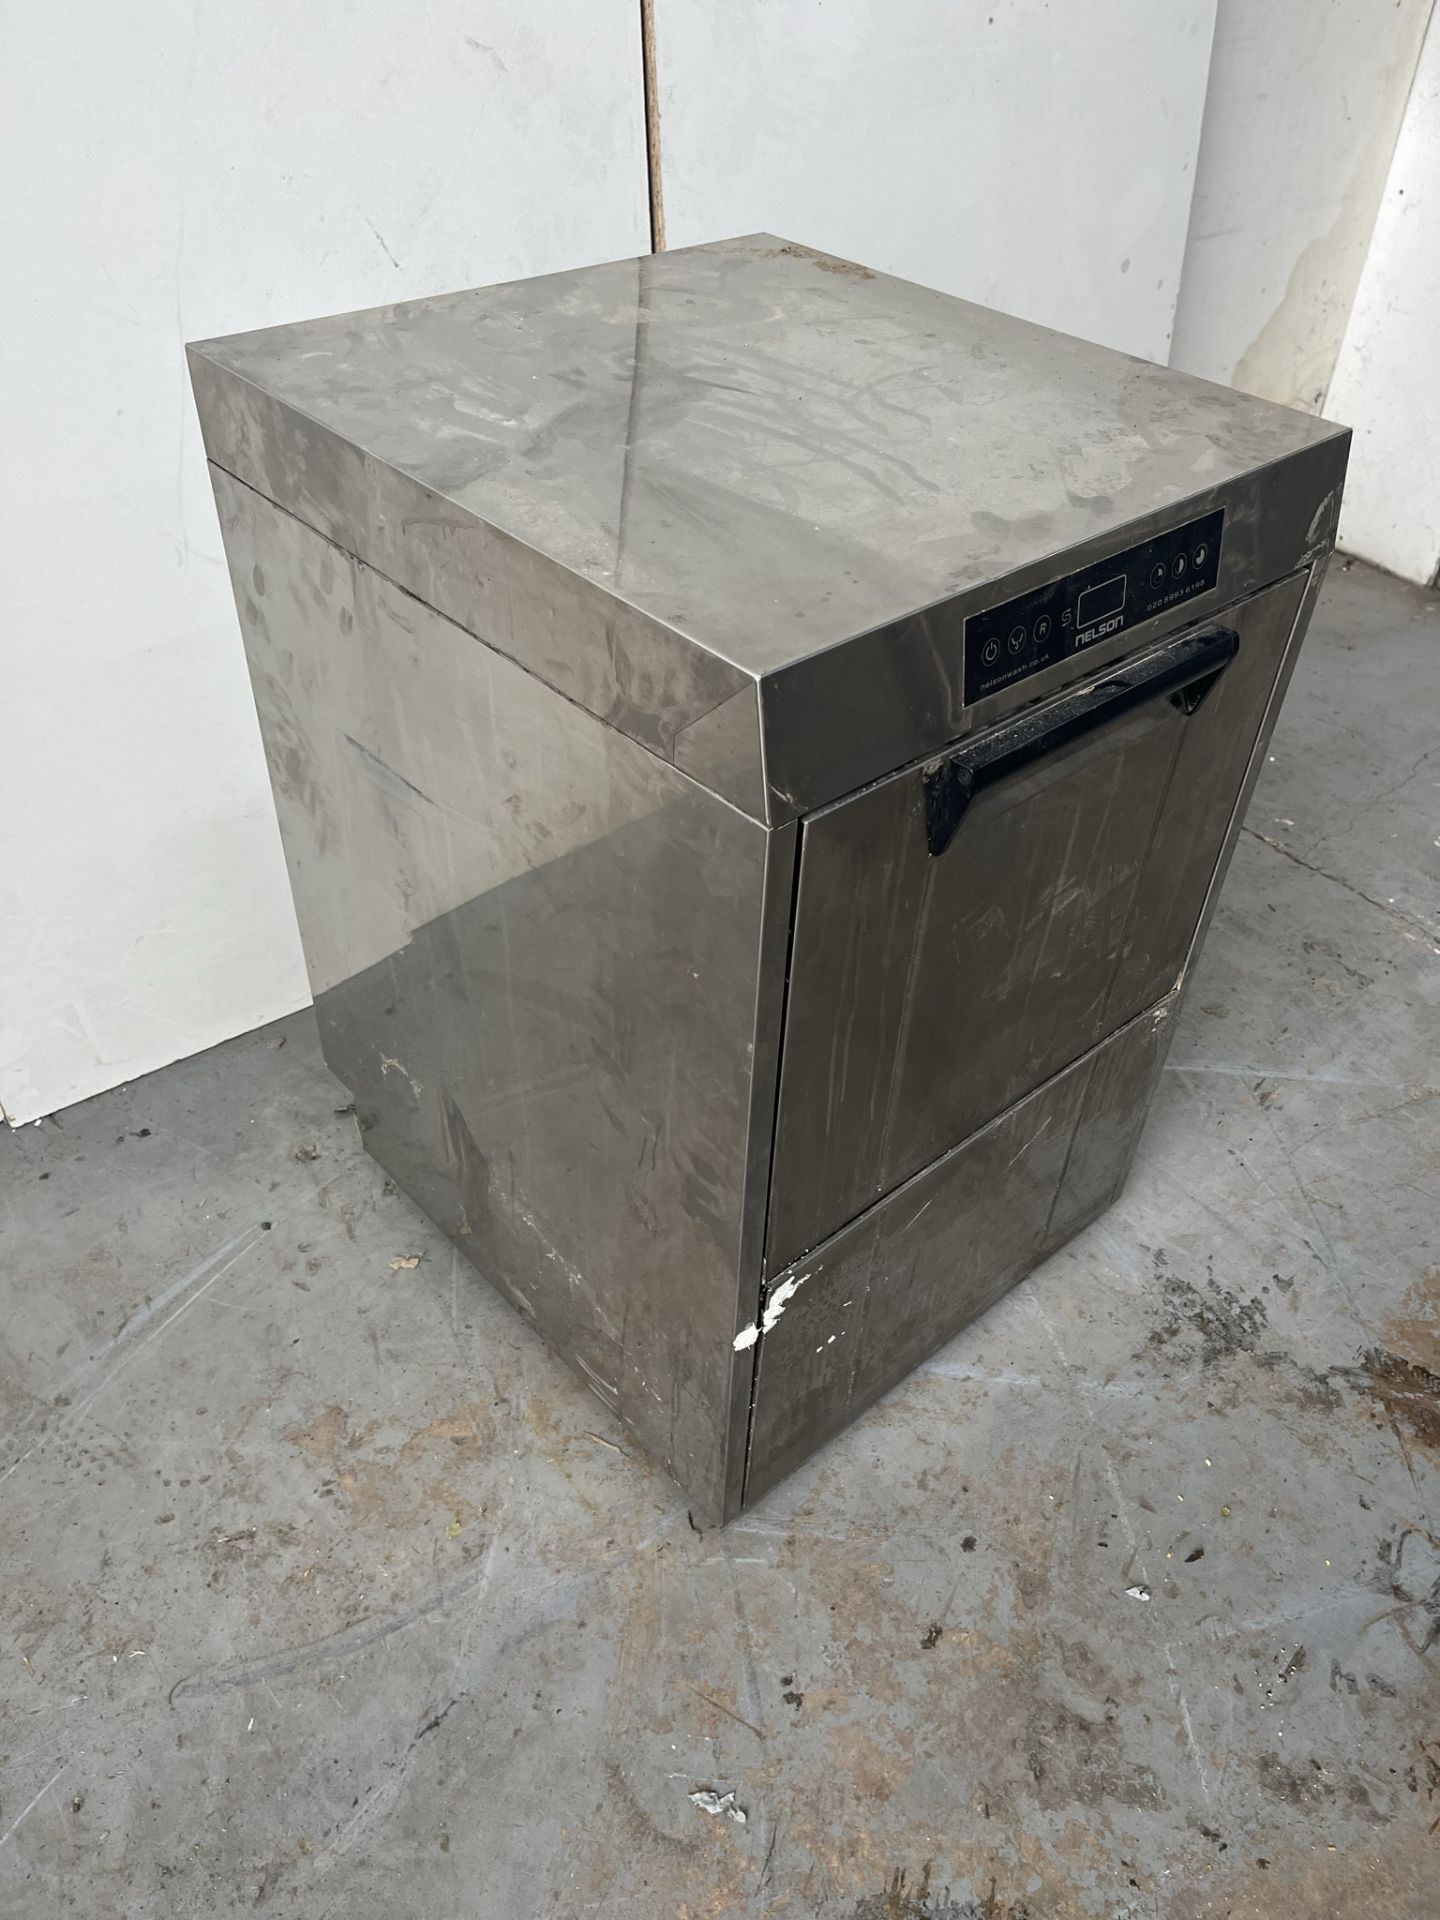 Nelson NWG410MSD Professional Dishwasher - Image 2 of 10